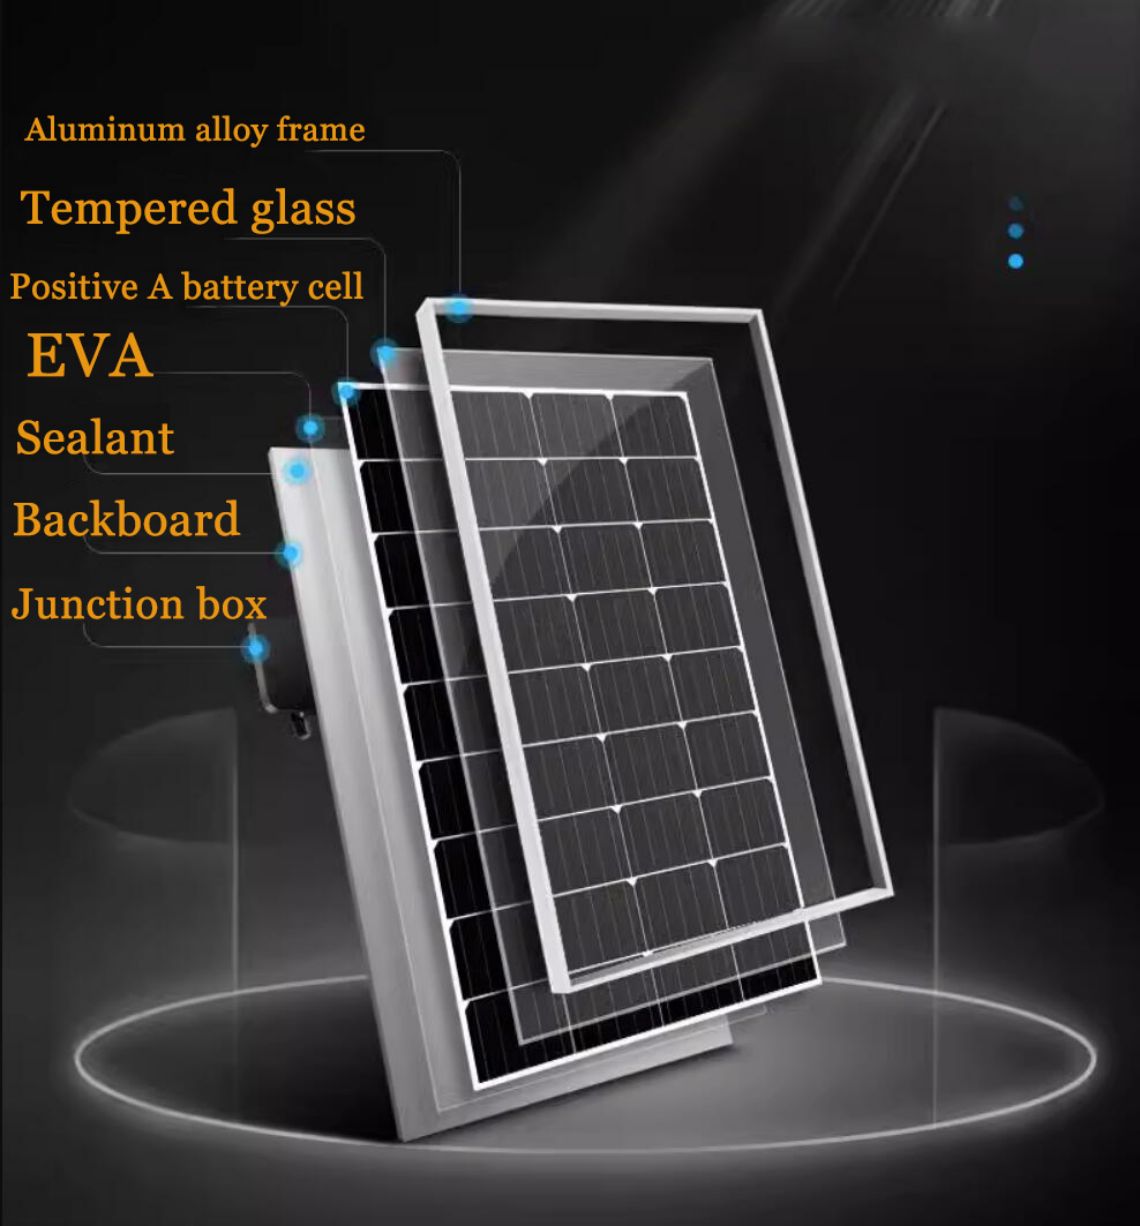 Aurinkokiteinen yksikiteinen pii yksipuolinen N-TOPCon-moduuli on eräänlainen korkeatehoinen aurinkosähkömoduuli.Se on valmistettu monokiteisestä piimateriaalista ja siinä on yksipuolinen N-TOPCon-rakenne.Tämä rakenne voi parantaa valosähköistä muunnostehokkuutta ja tuottaa paremman virran.